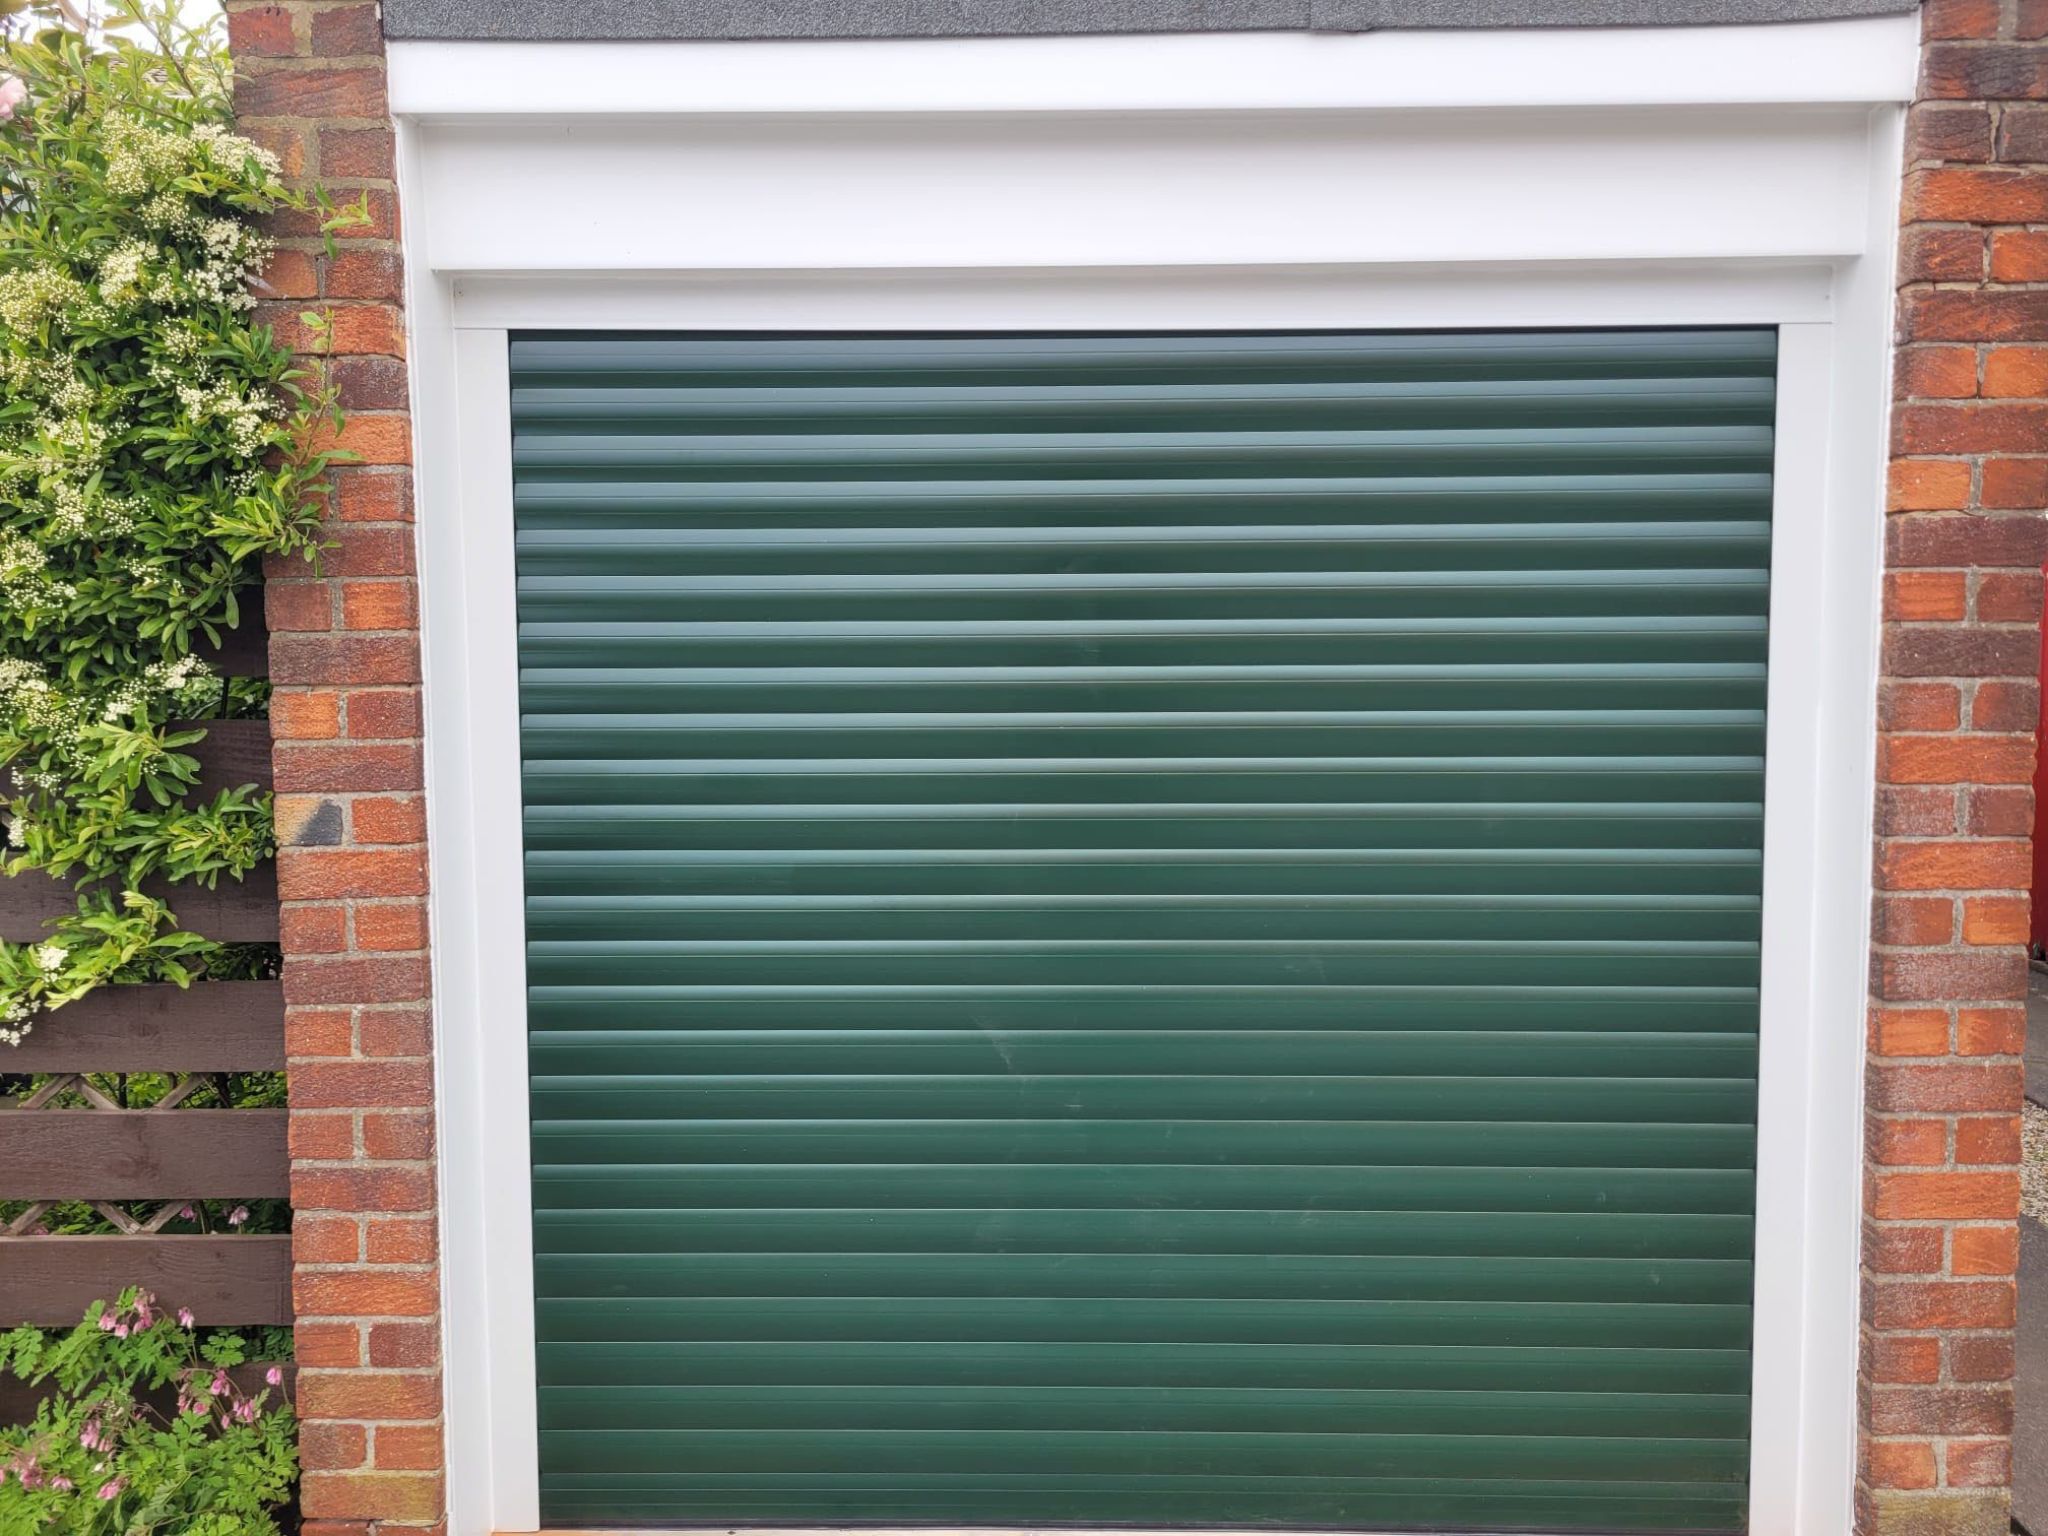 Electric roller garage doors Newcastle